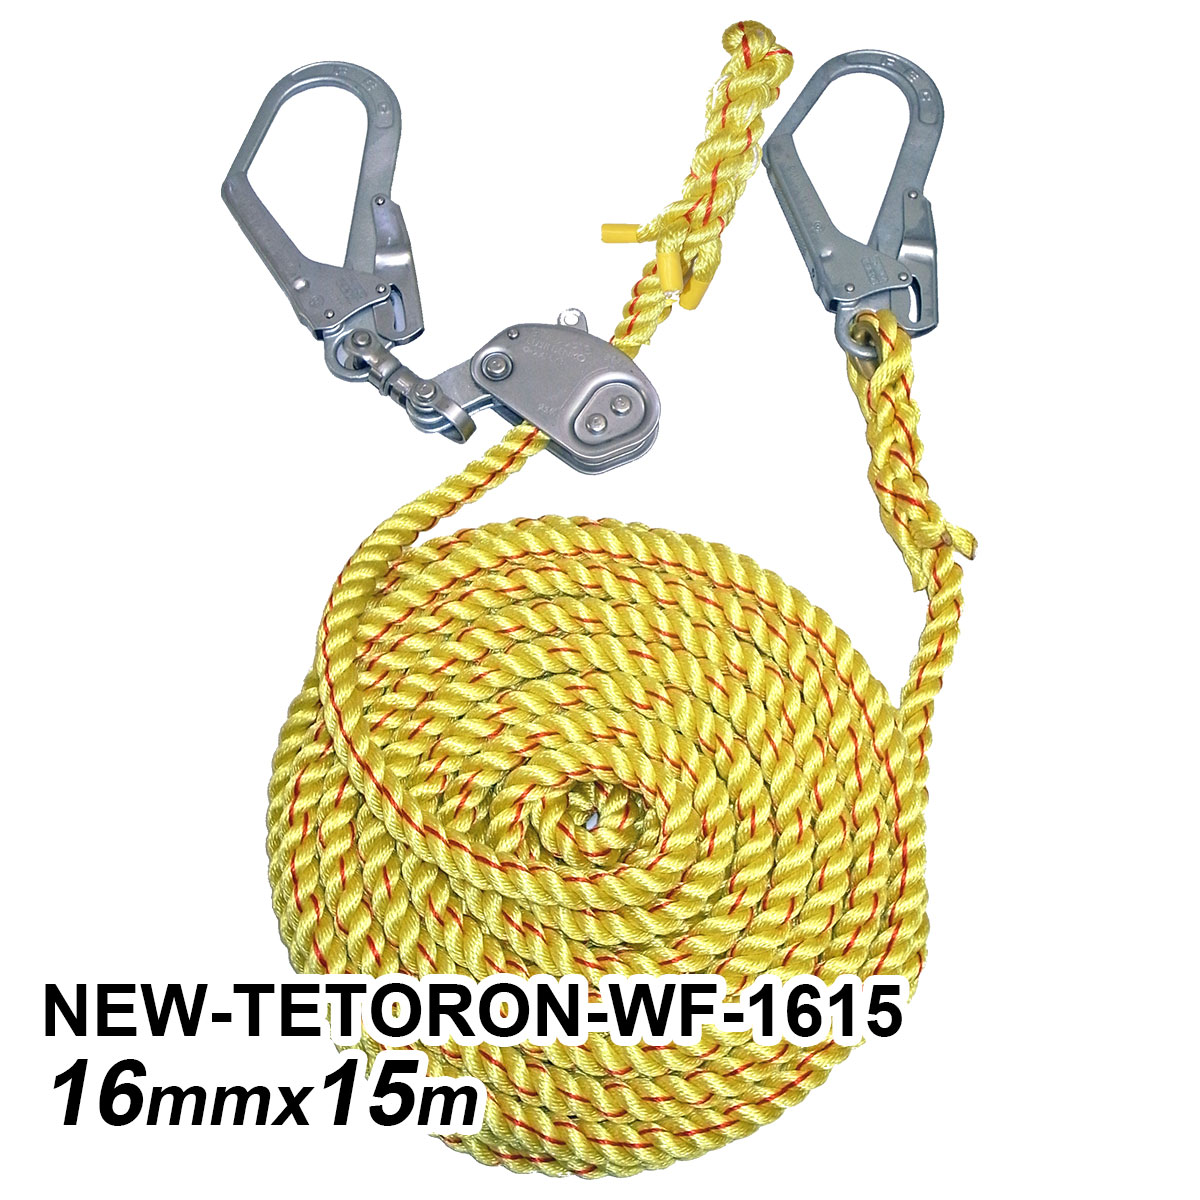 ニューテトロン水平親綱 16mm×15m NEW-TETORON-WF-1615 まつやま工業